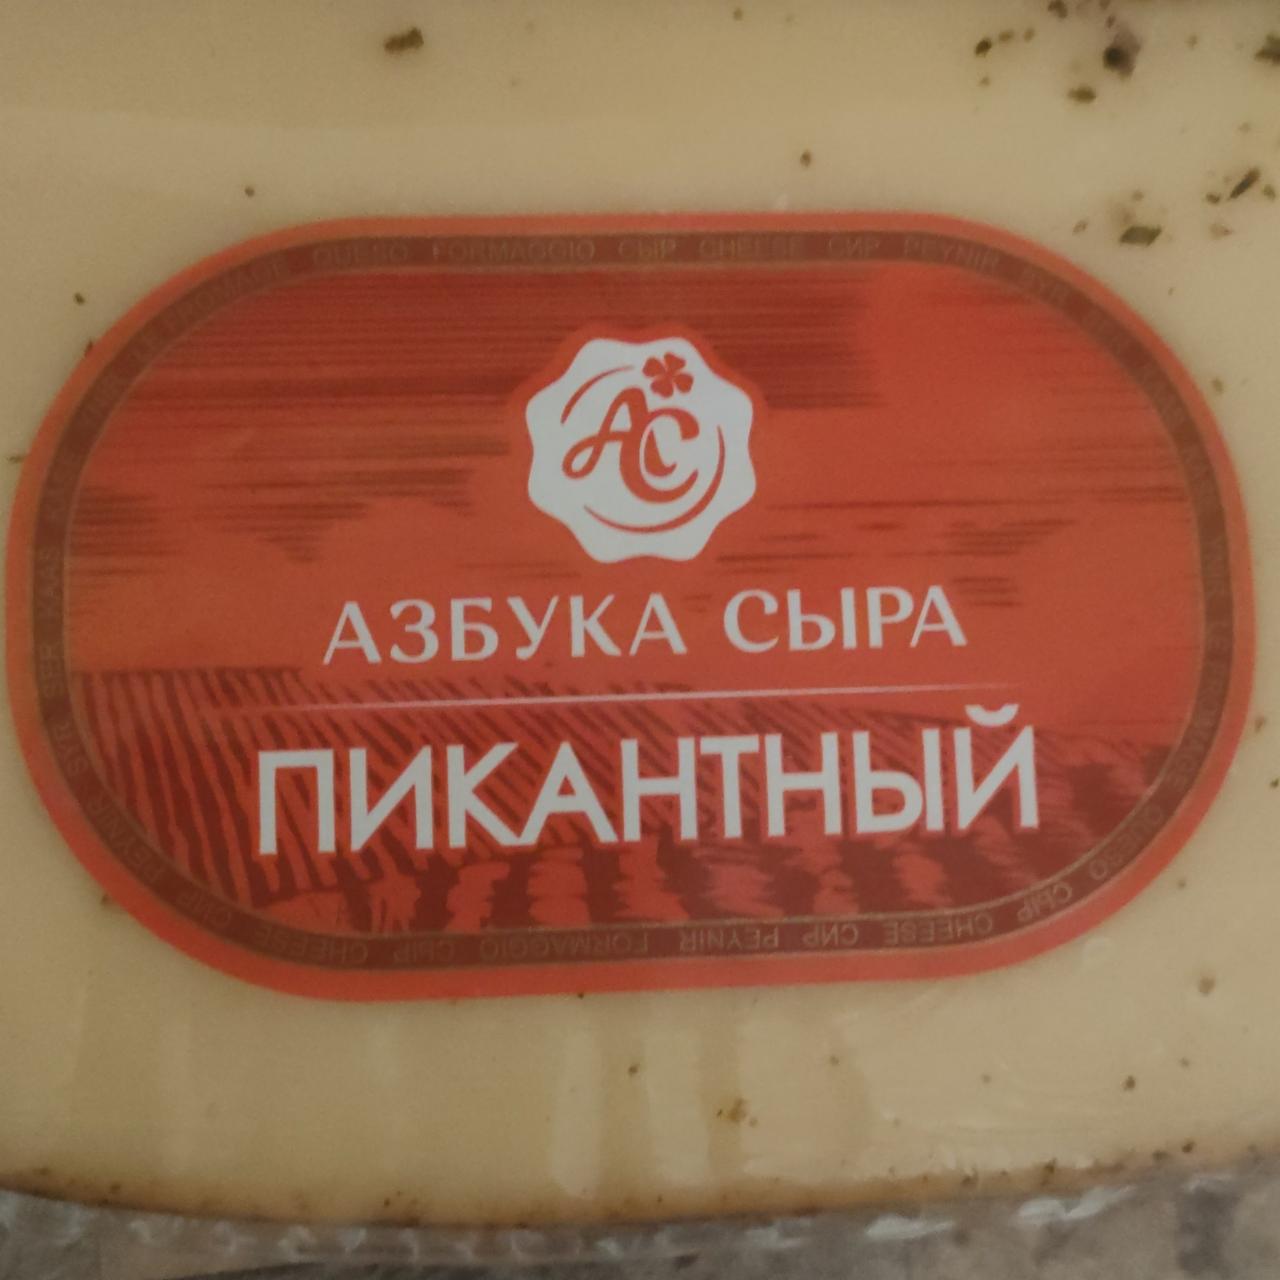 Фото - Сыр Пикантный 45% Азбука сыра